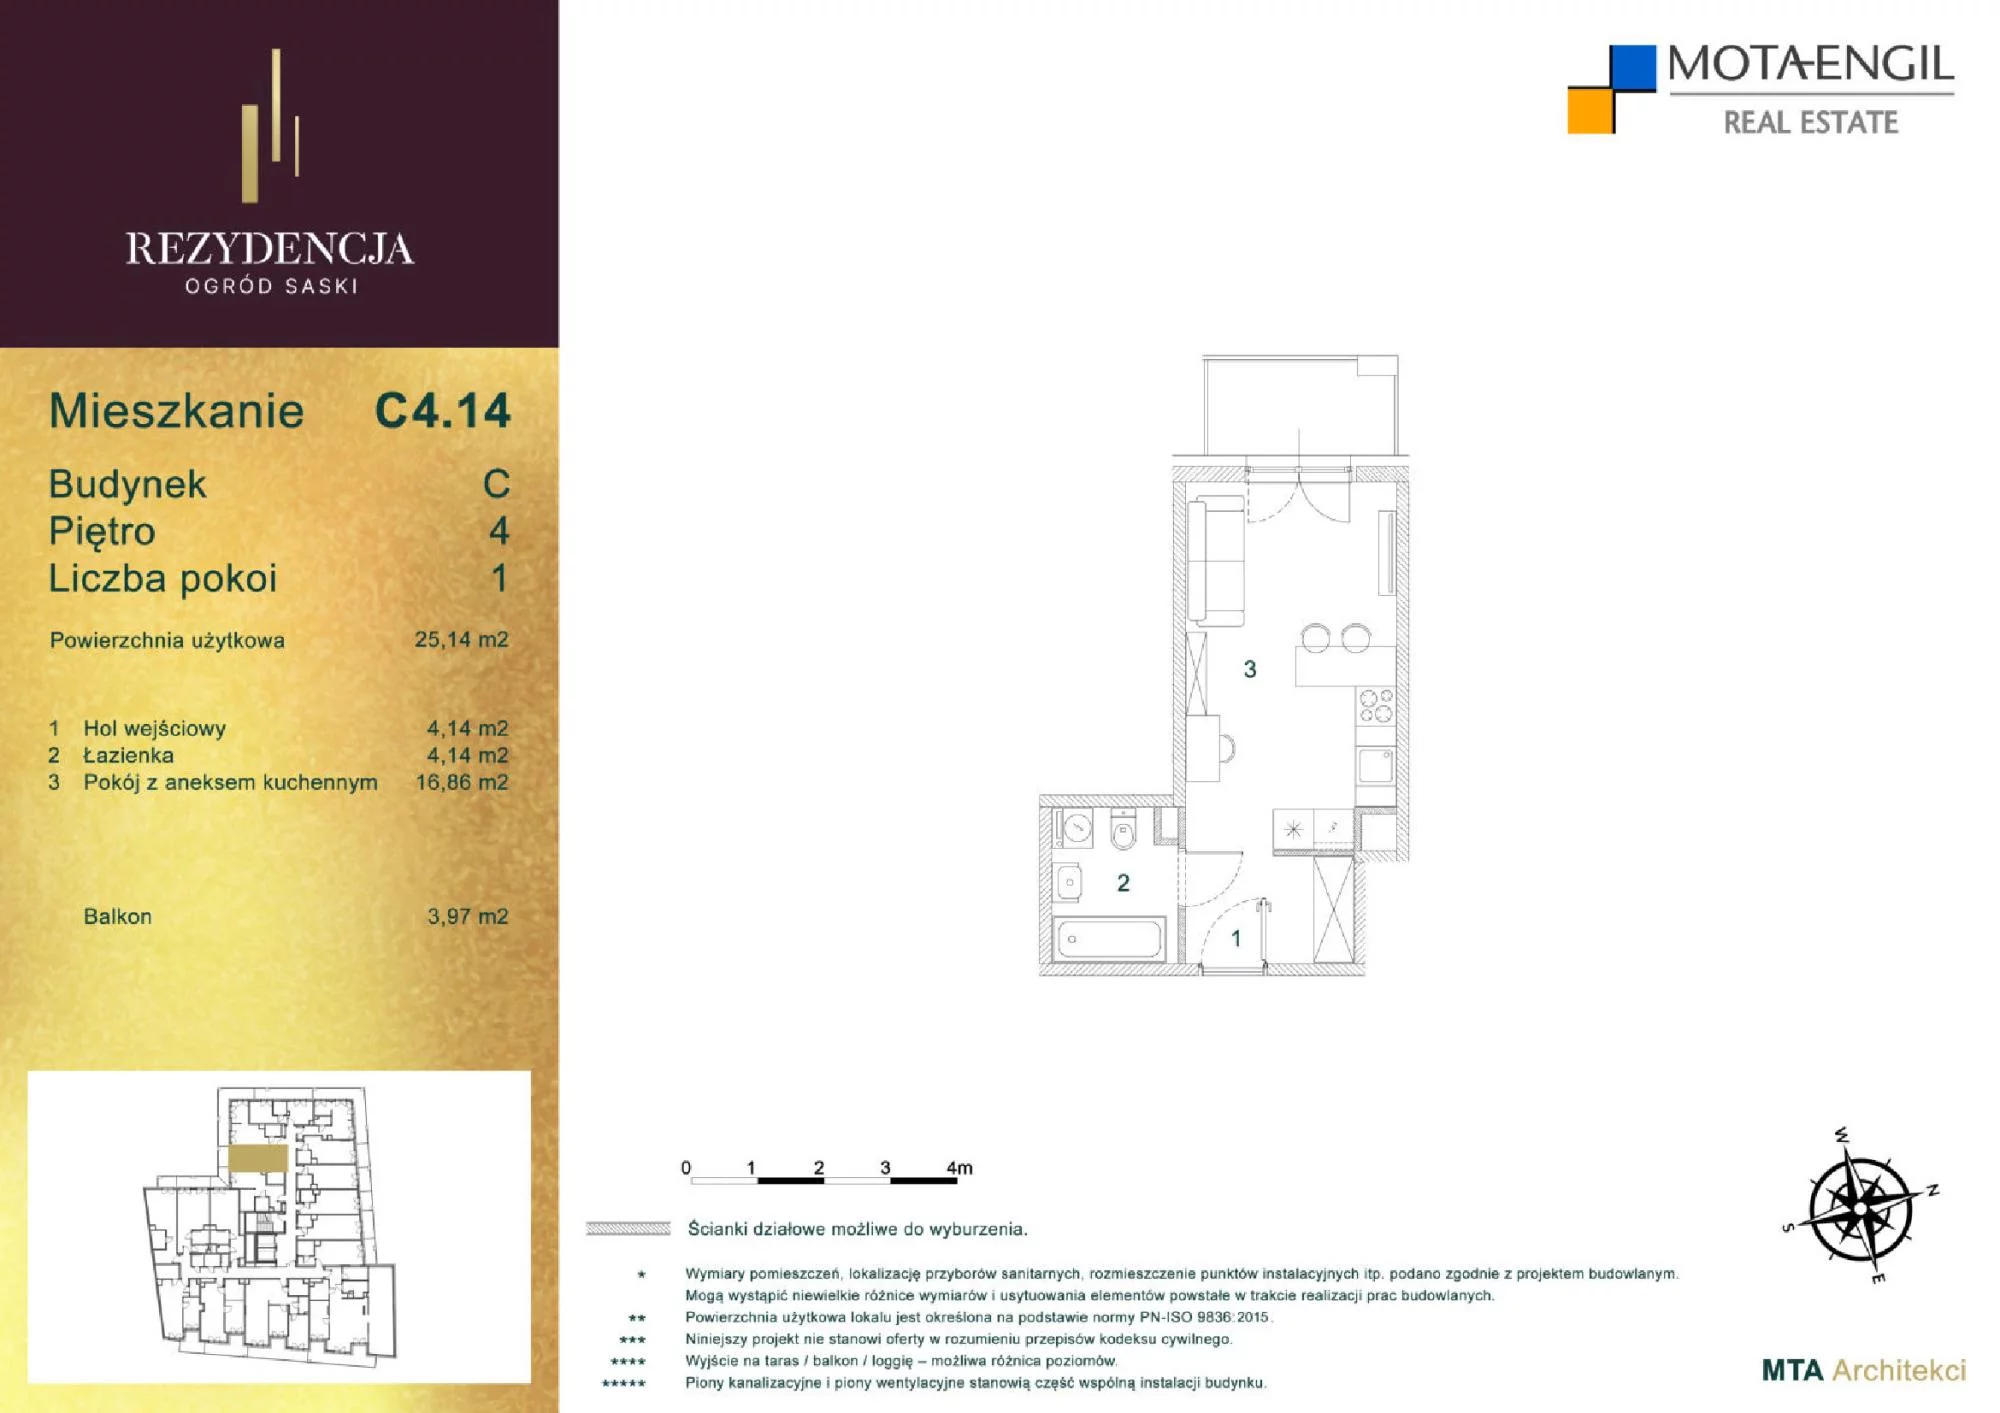 Mieszkanie 25,14 m², piętro 4, oferta nr C4.14, Rezydencja Ogród Saski, Lublin, Wieniawa, ul. Jasna 7, 7A